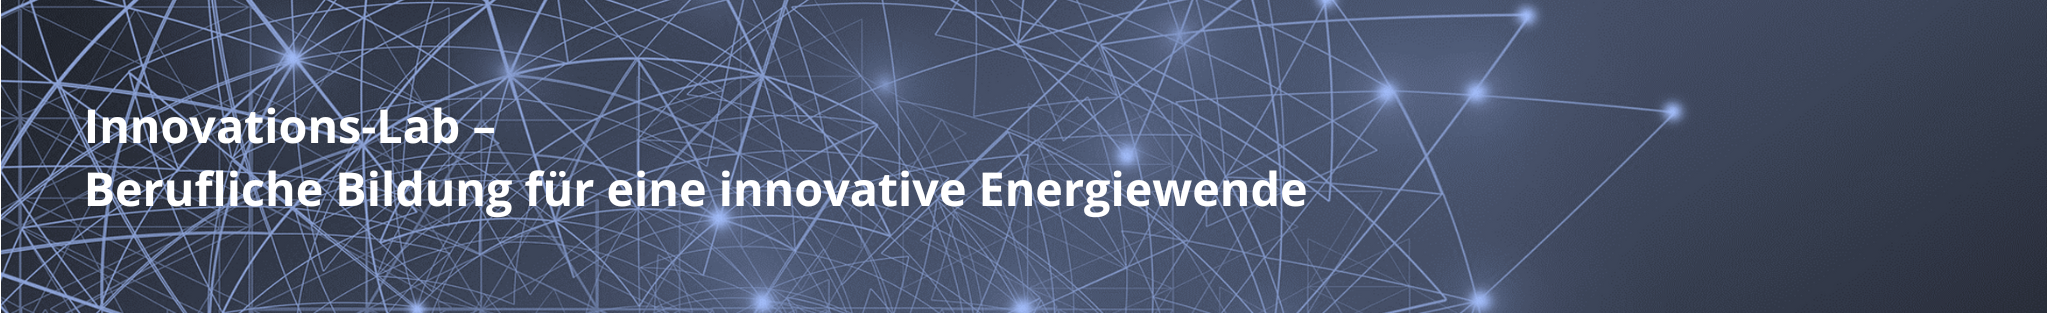 Innovations-Lab Berufliche Bildung für eine innovative Energiewende